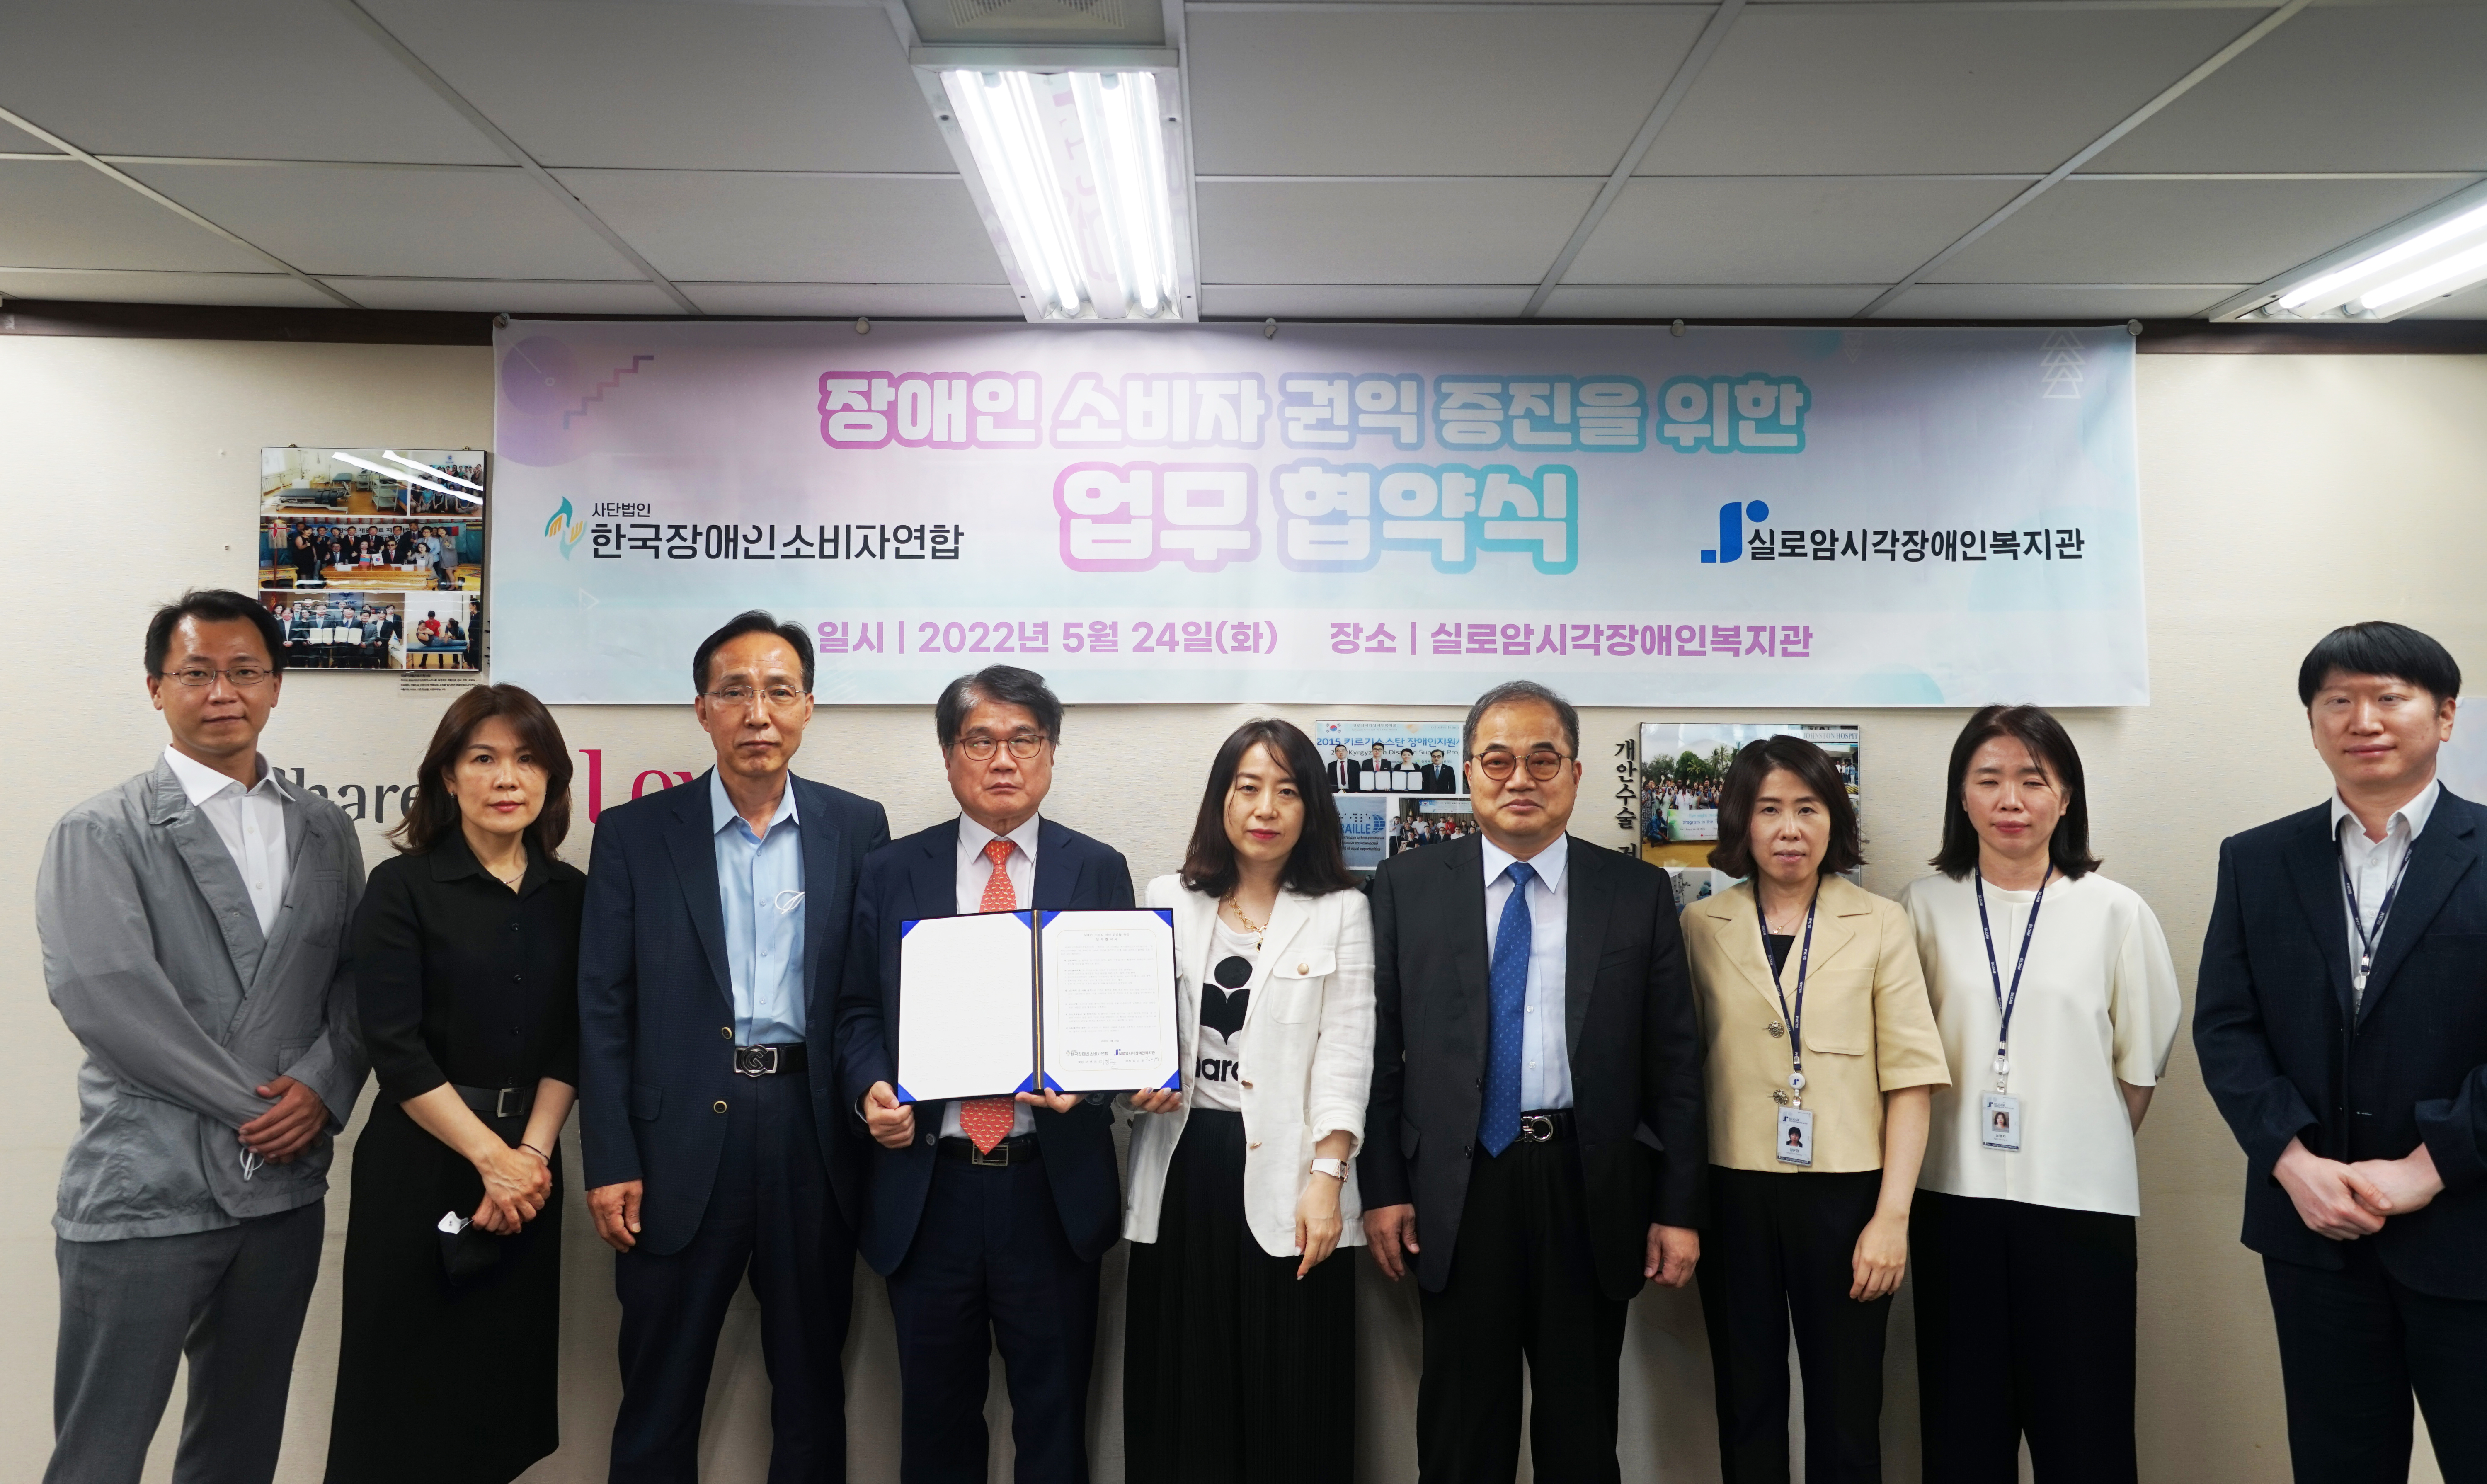 한국장애인소비자연합과의 장애인 소비자 권익 증진을 위한 업무협약식 진행